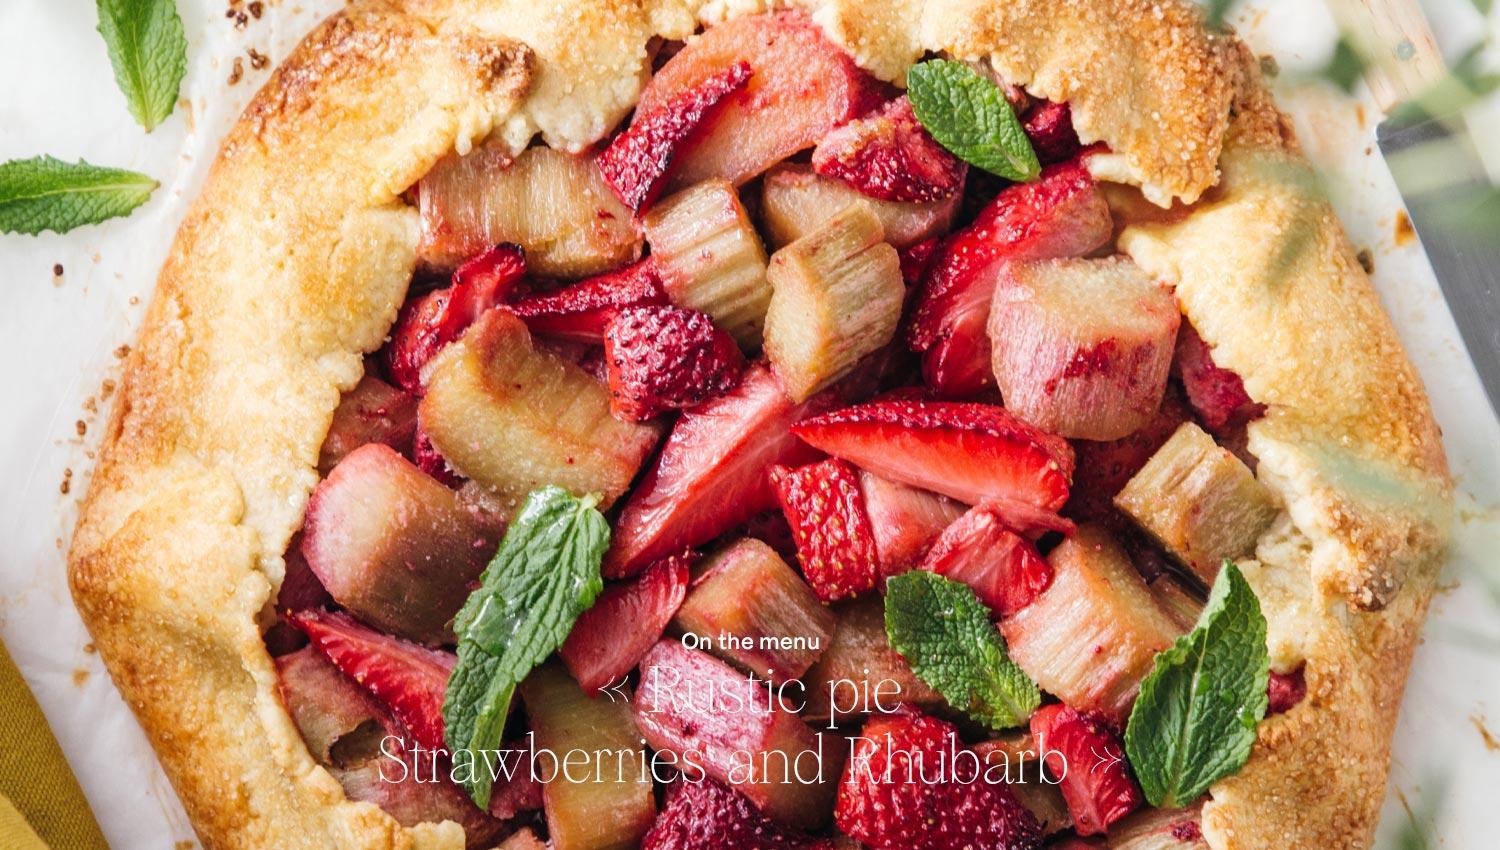 Strawberries and rhubarb rustic pie